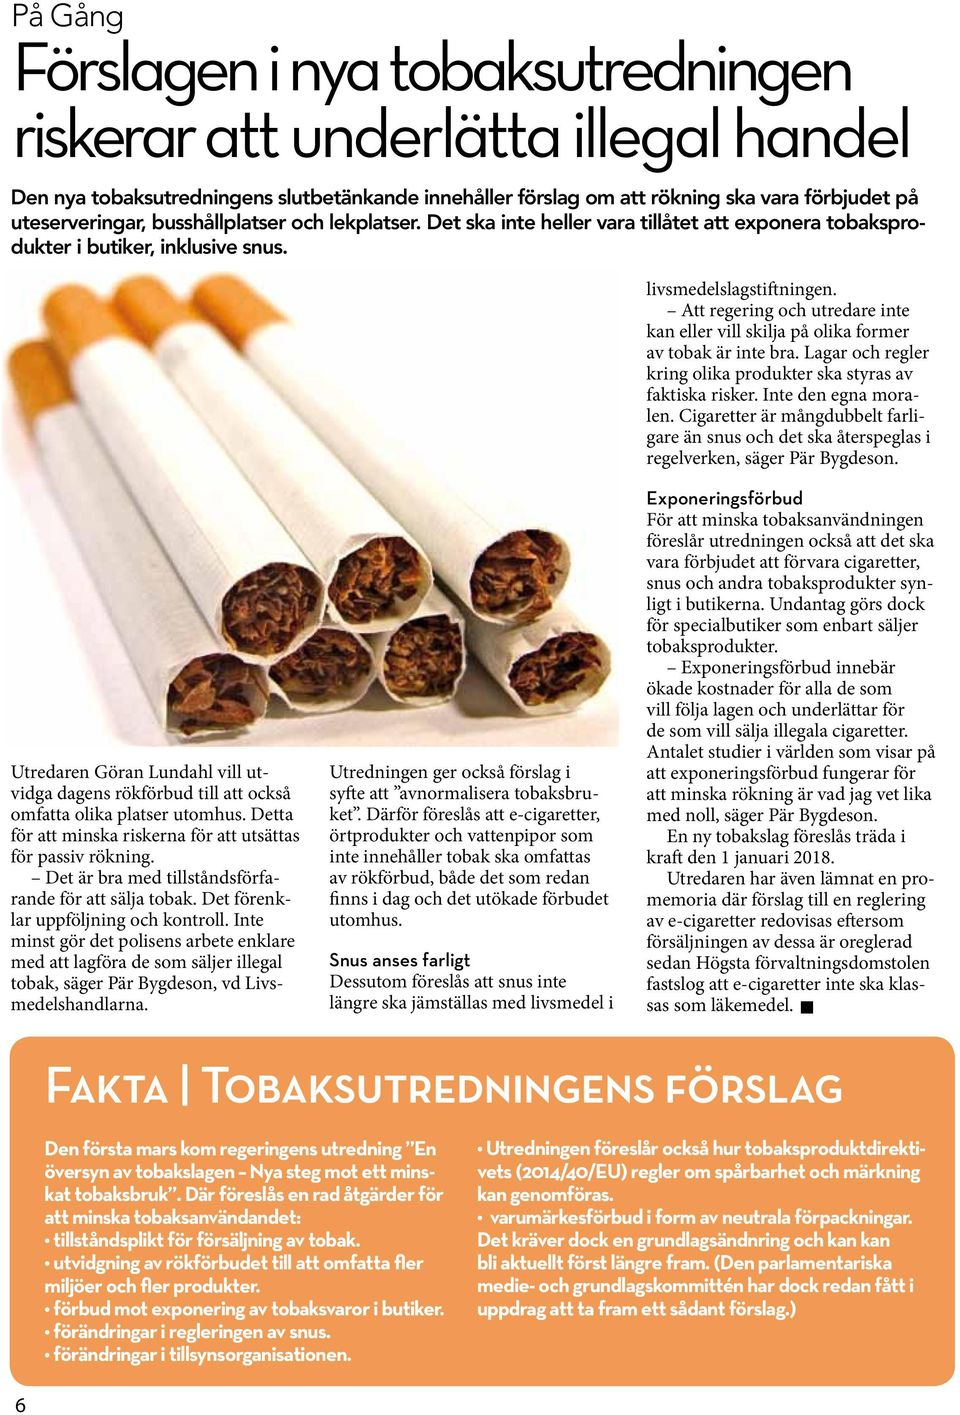 Att regering och utredare inte kan eller vill skilja på olika former av tobak är inte bra. Lagar och regler kring olika produkter ska styras av faktiska risker. Inte den egna moralen.